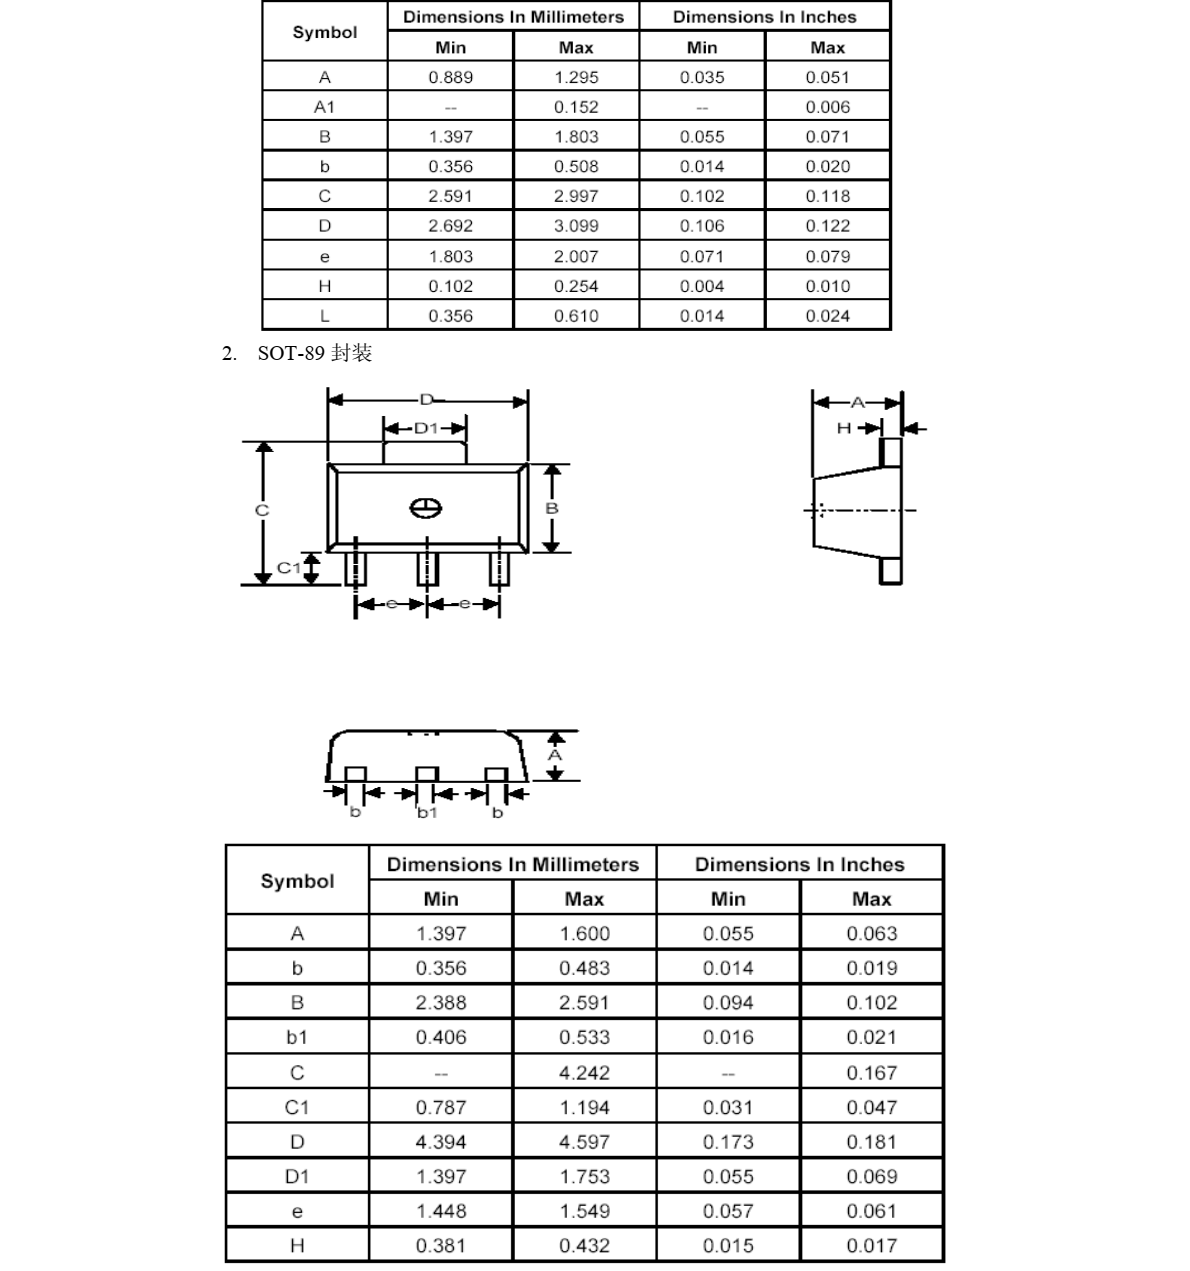 电 压 检 测 芯 片 –TP74 系列